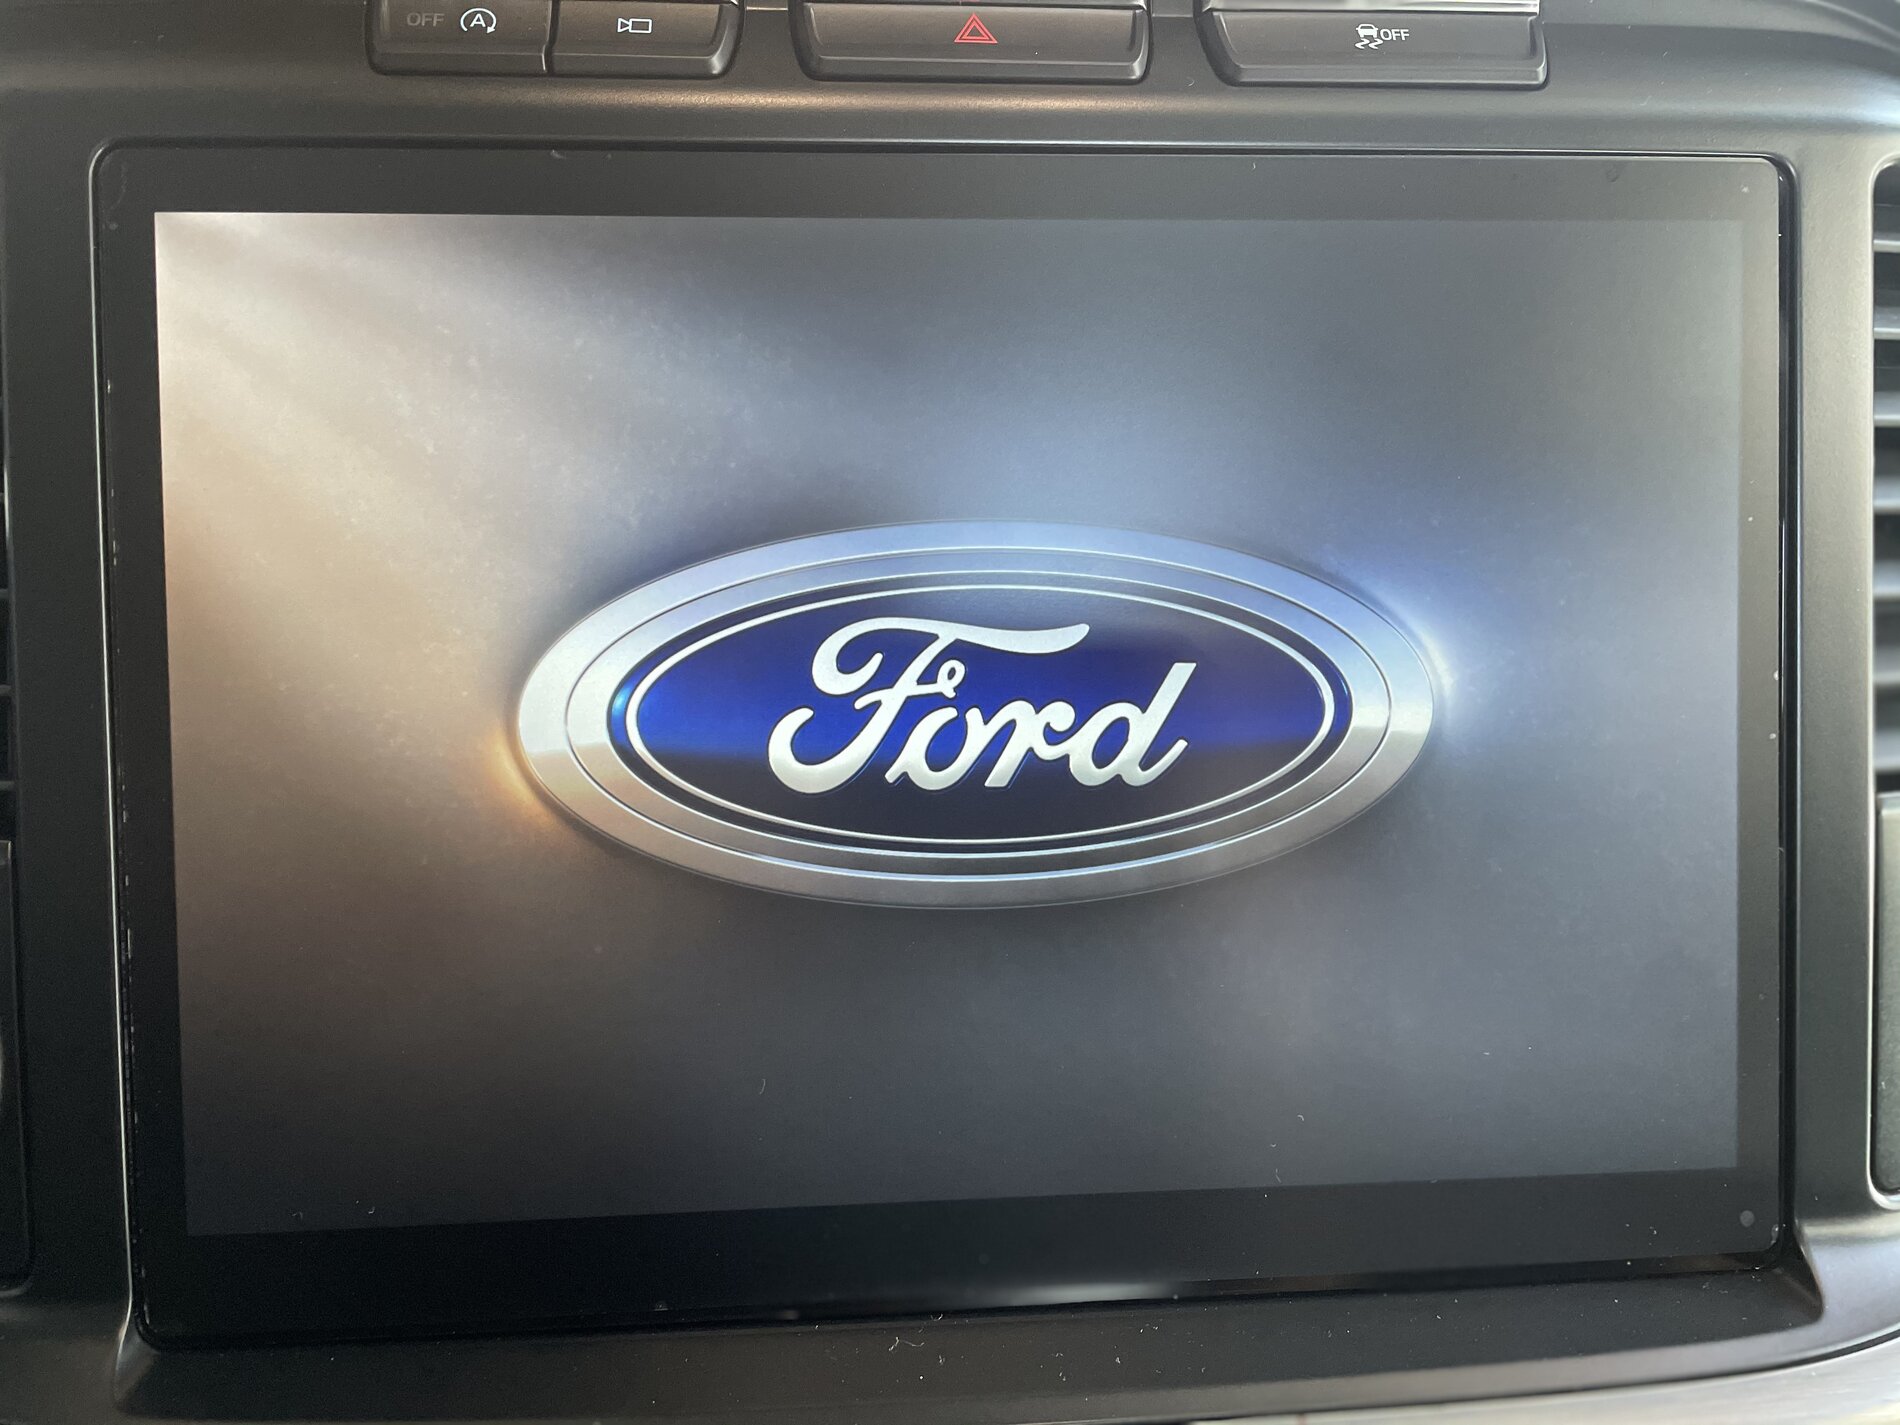 Ford F-150 Tiny review on the OCDPlug AB4D131E-C52C-43A9-9875-5F277508C805